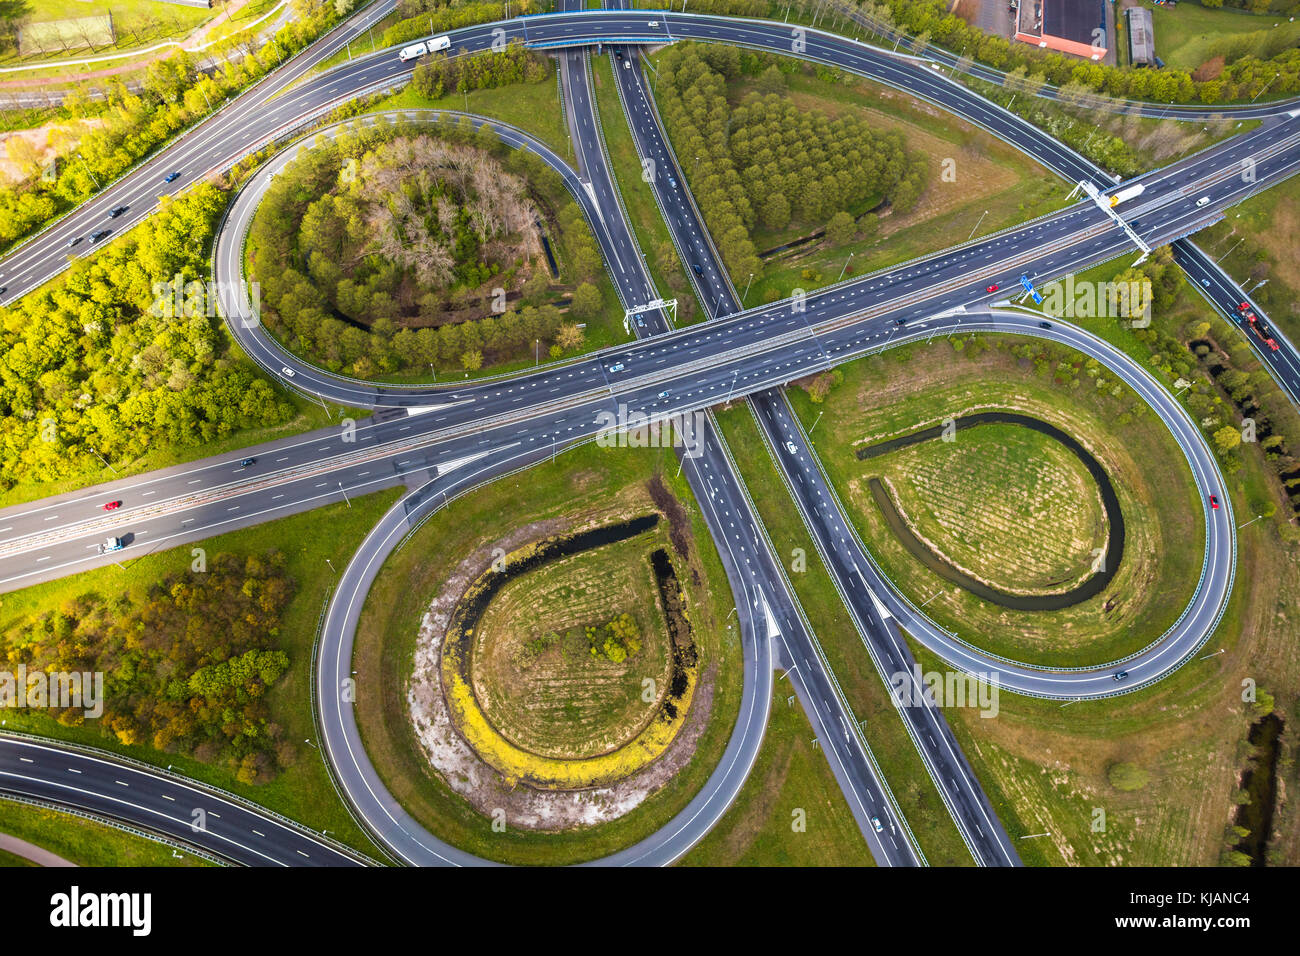 Vue aérienne de jonctions de route, près d'Amsterdam, Pays-Bas Banque D'Images